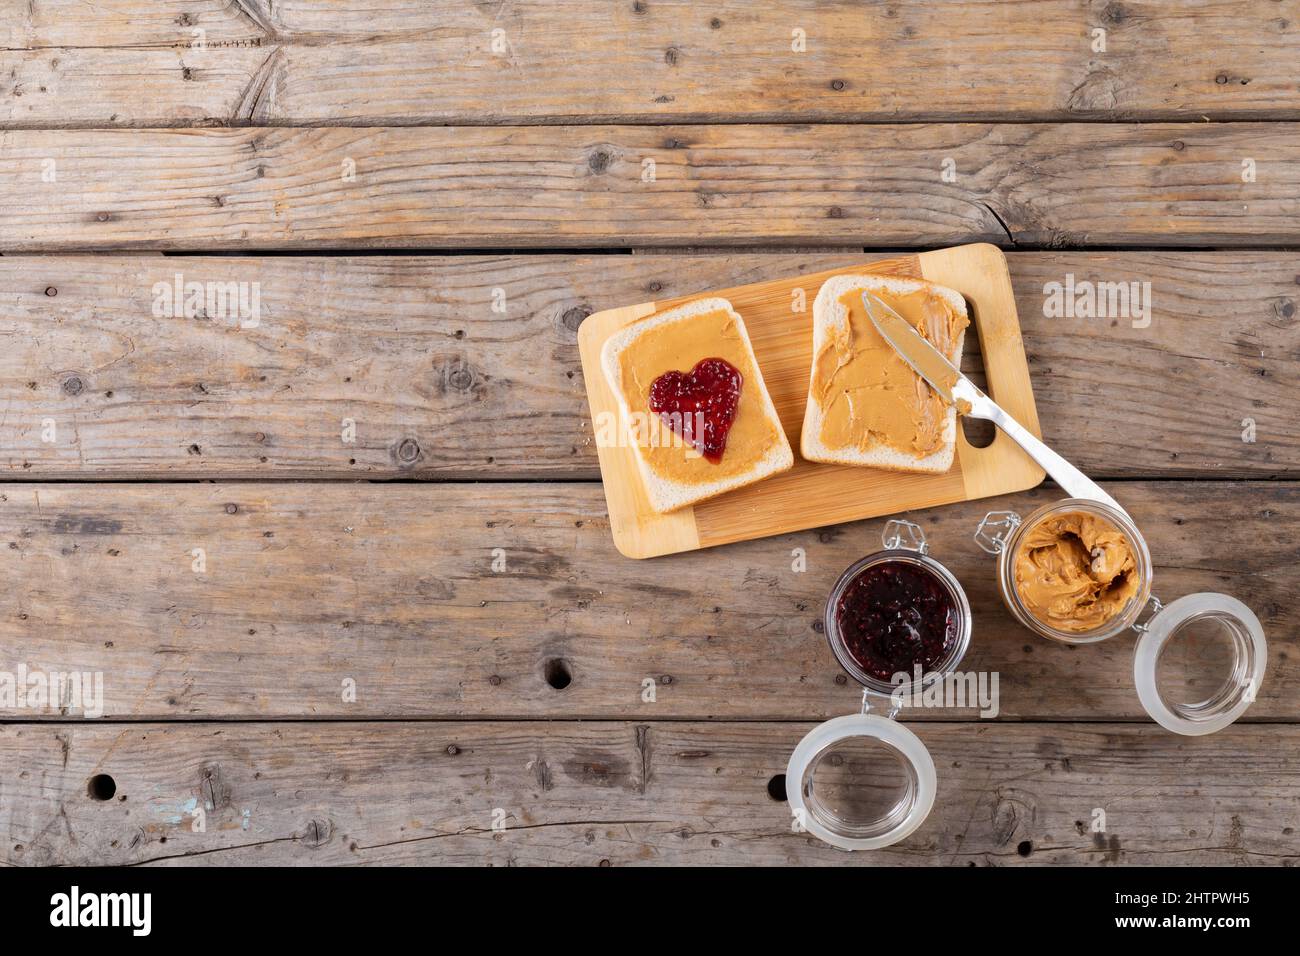 Vista dall'alto del burro di arachidi a faccia aperta e sandwich di gelatina sul bordo di servizio con vasetti al tavolo Foto Stock